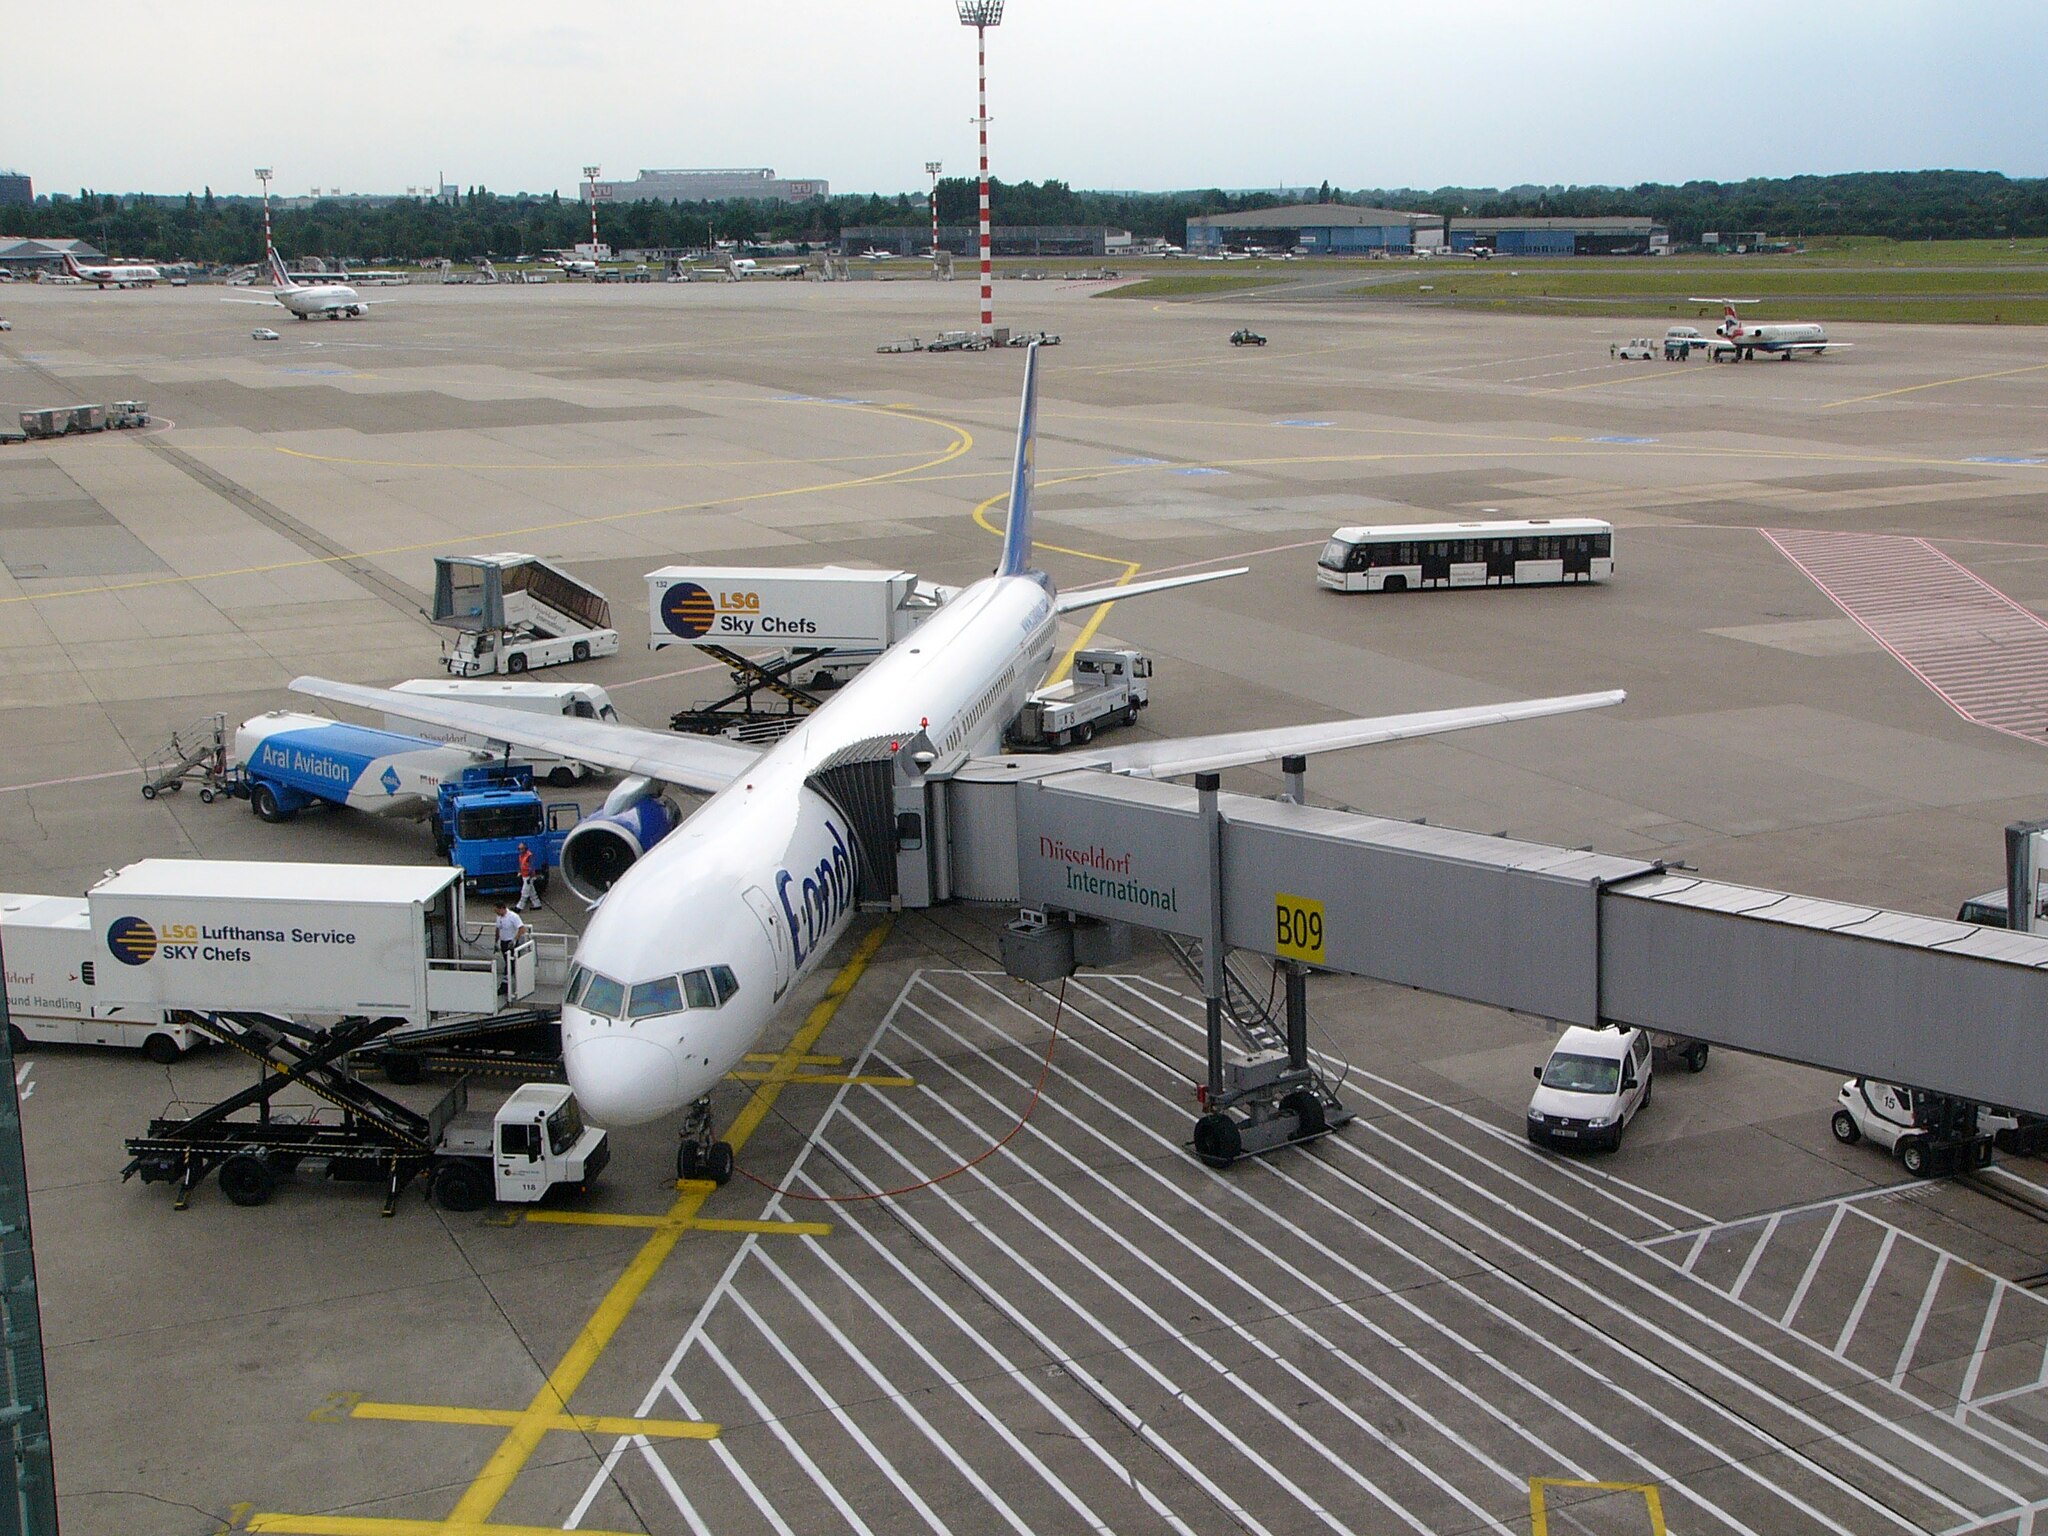 Bild: Archangel12, Düsseldorf Airport - DUS - Flughafen Düsseldorf, CC BY 2.0, via Wikimedia Commons, (keine Änderungen vorgenommen)